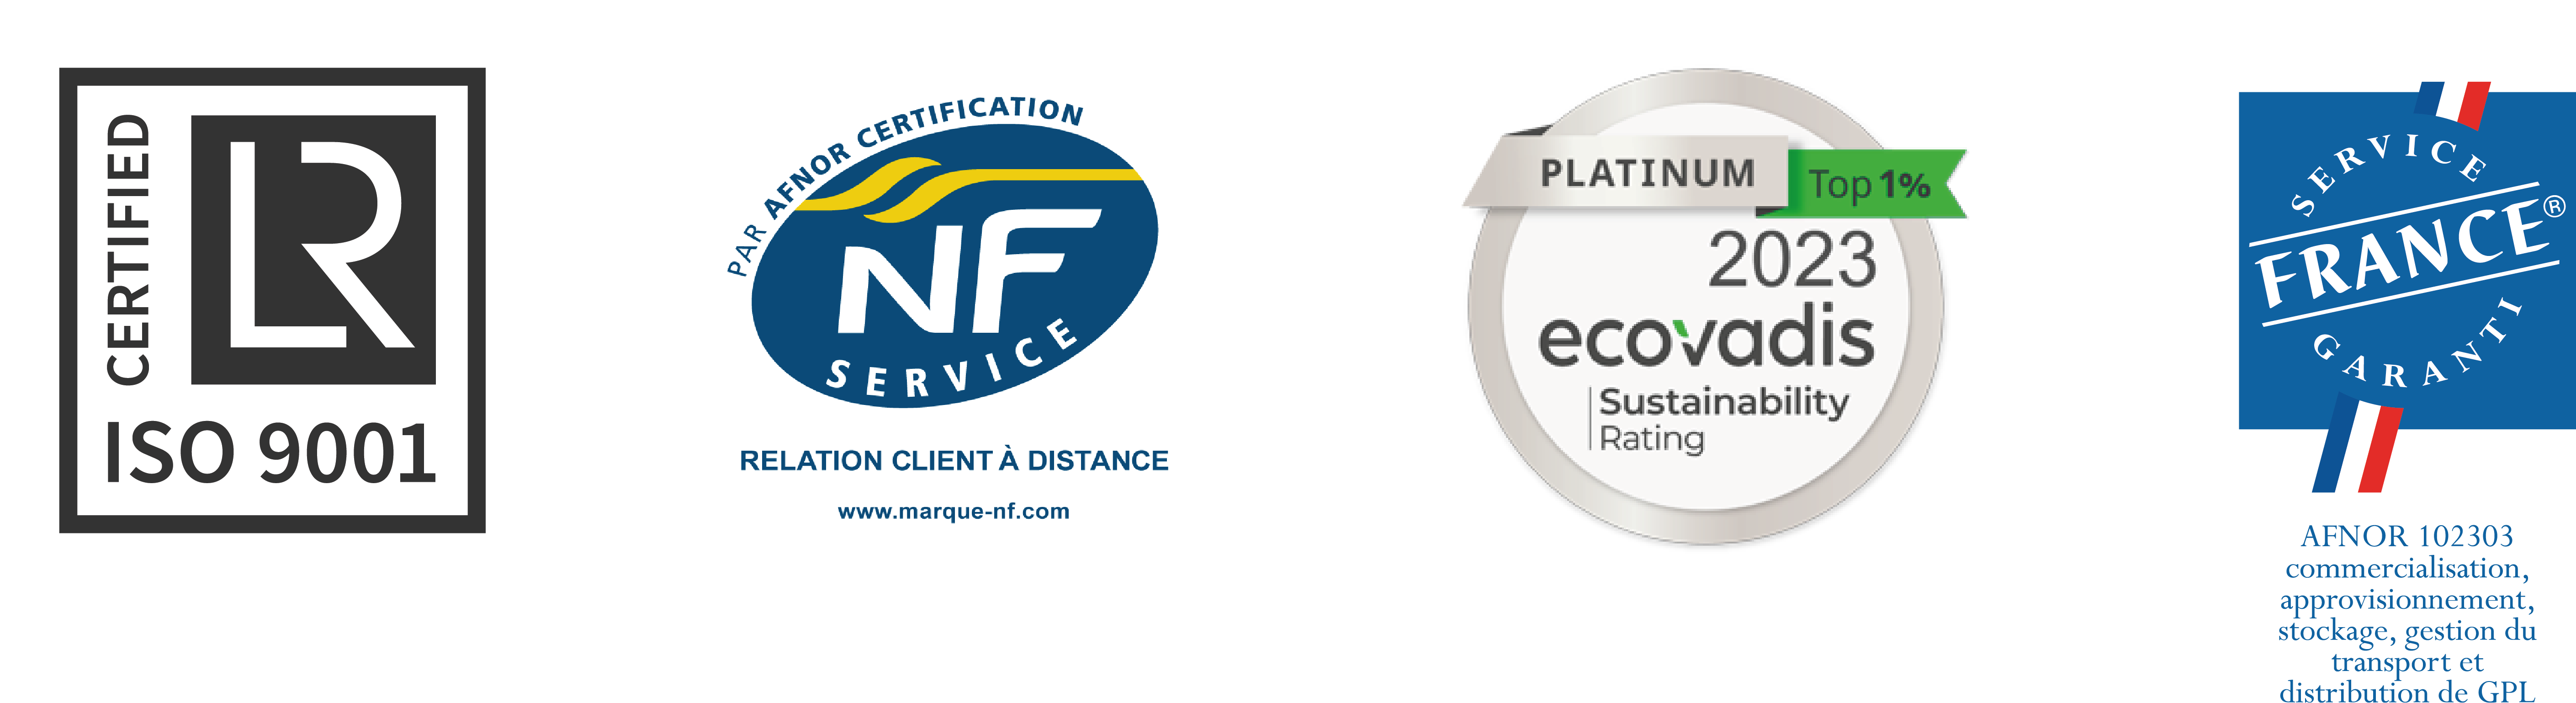 VITOGAZ FRANCE est certifiée Service France Garanti, NF Service Relation Client, ISO 9001, Ecovadis